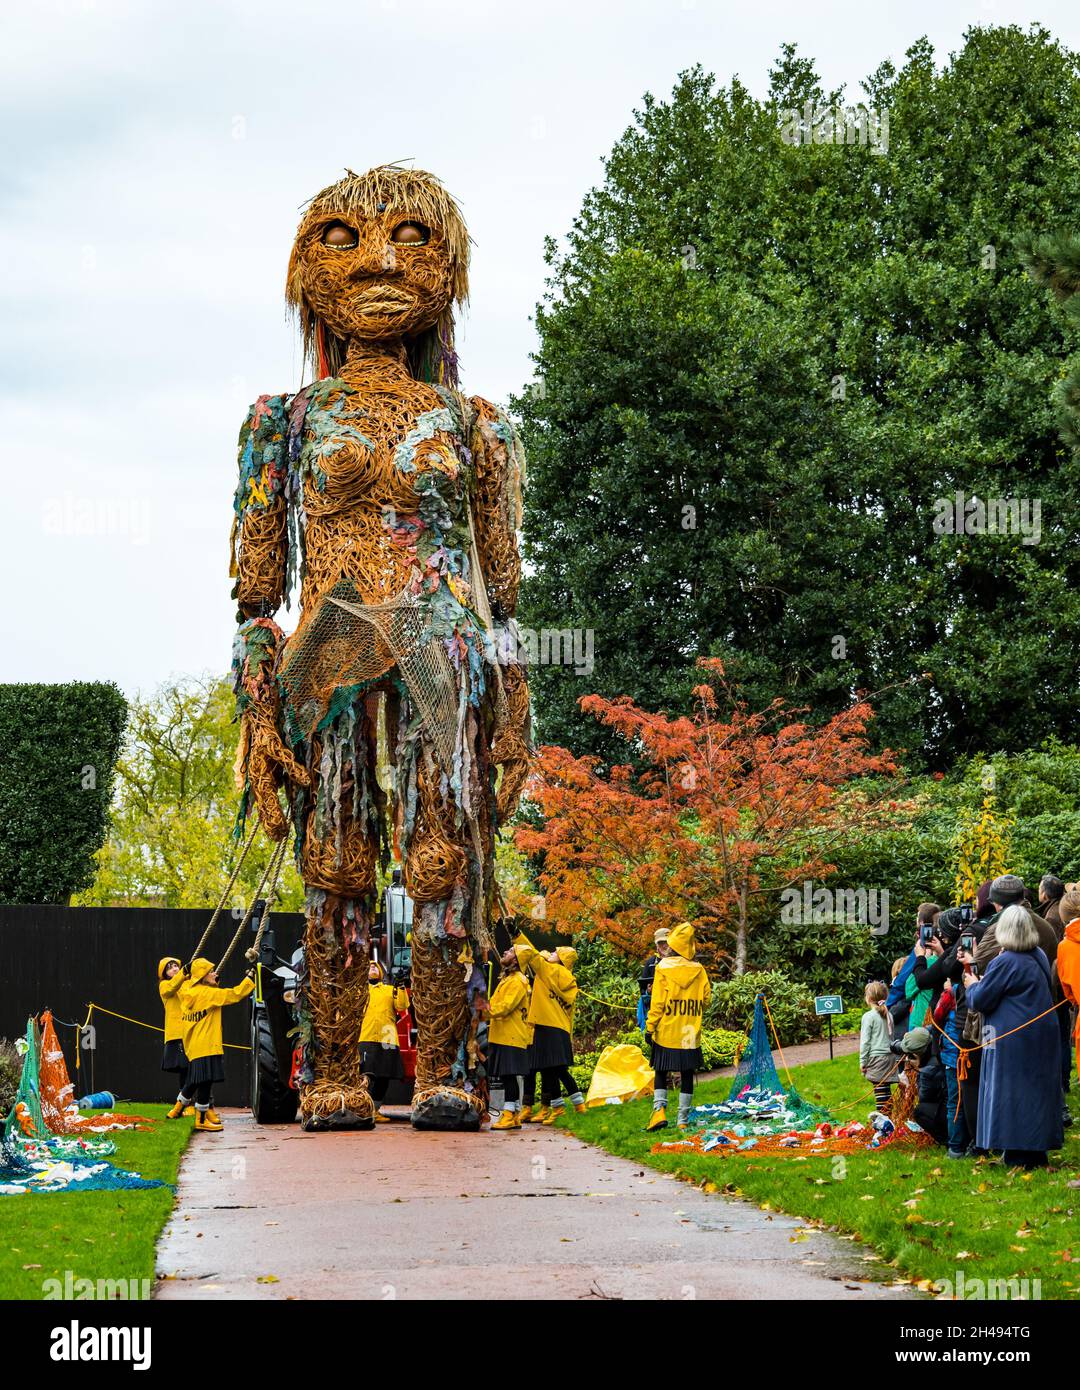 Des gens qui regardent la tempête de marionnettes géantes, des matériaux recyclés de forme, au Royal Botanic Garden, Édimbourg, Écosse, Royaume-Uni Banque D'Images